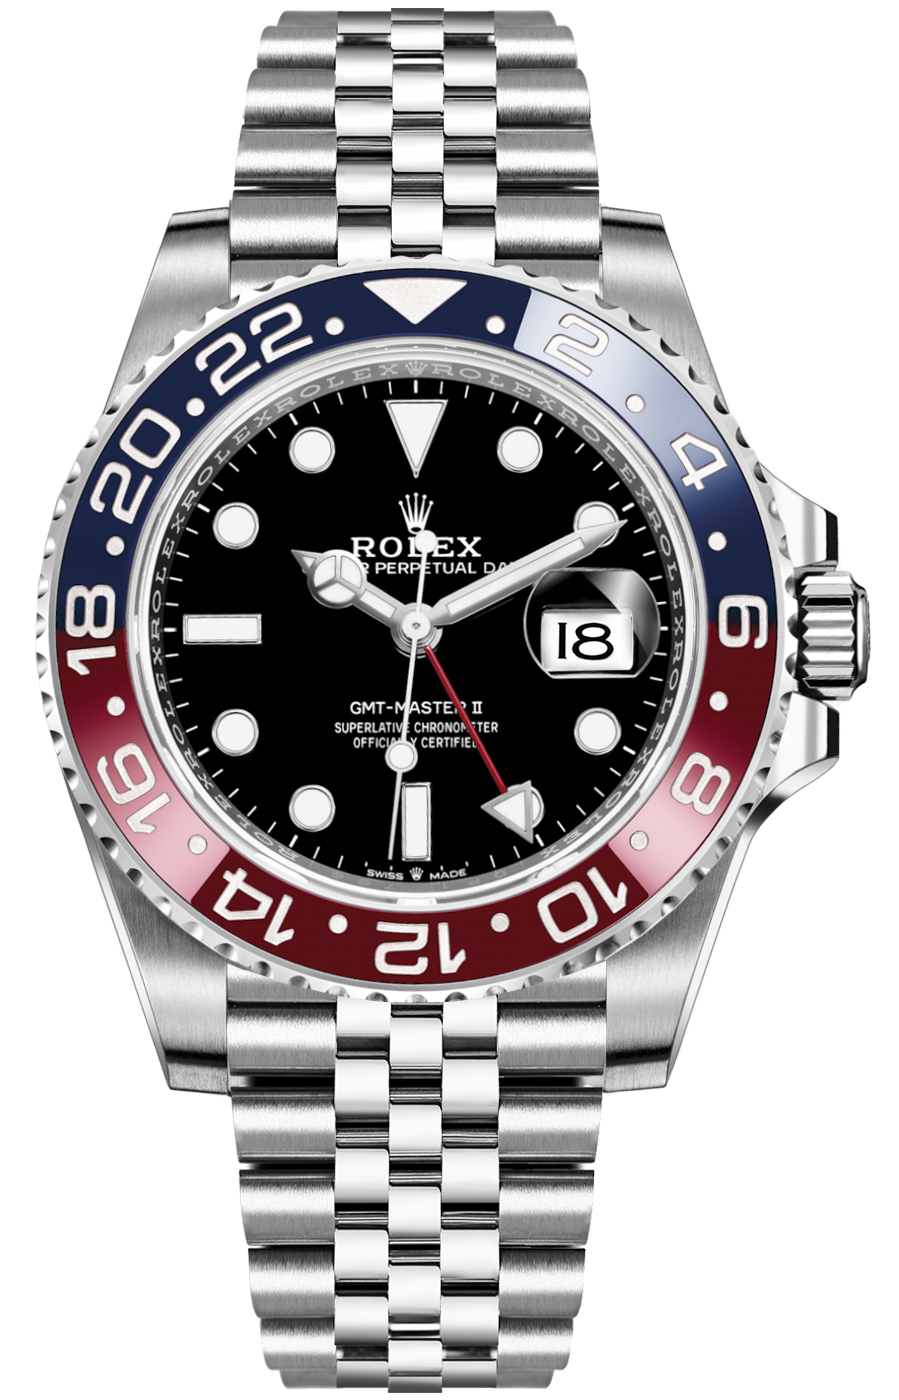 126710blro Rolex GMT Master II Mens Watch